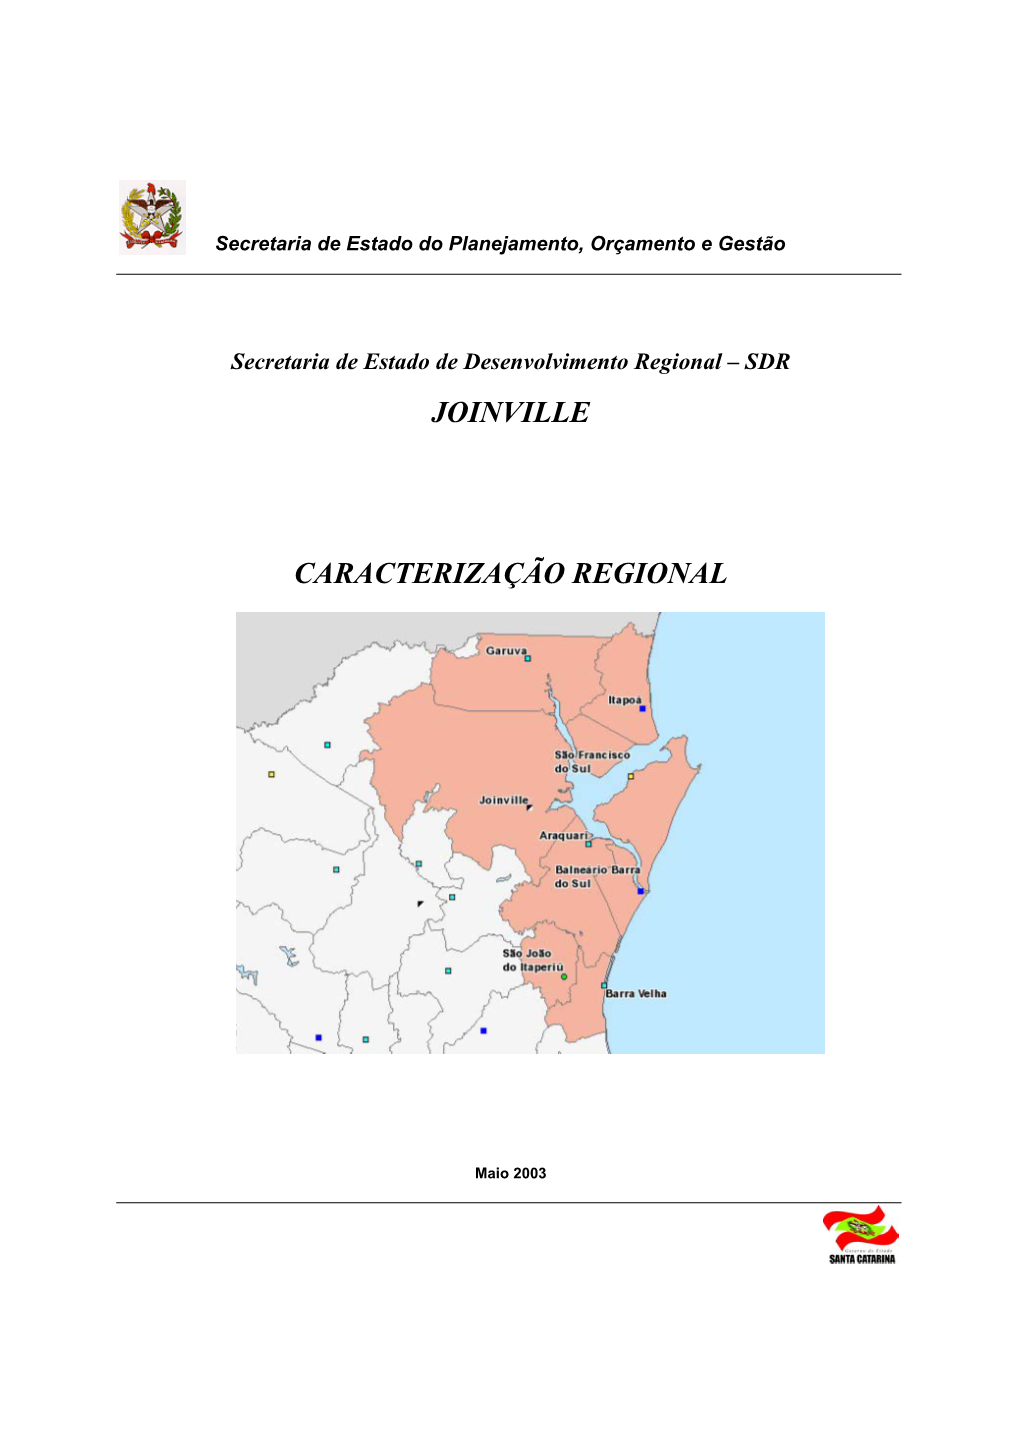 Joinville Caracterização Regional